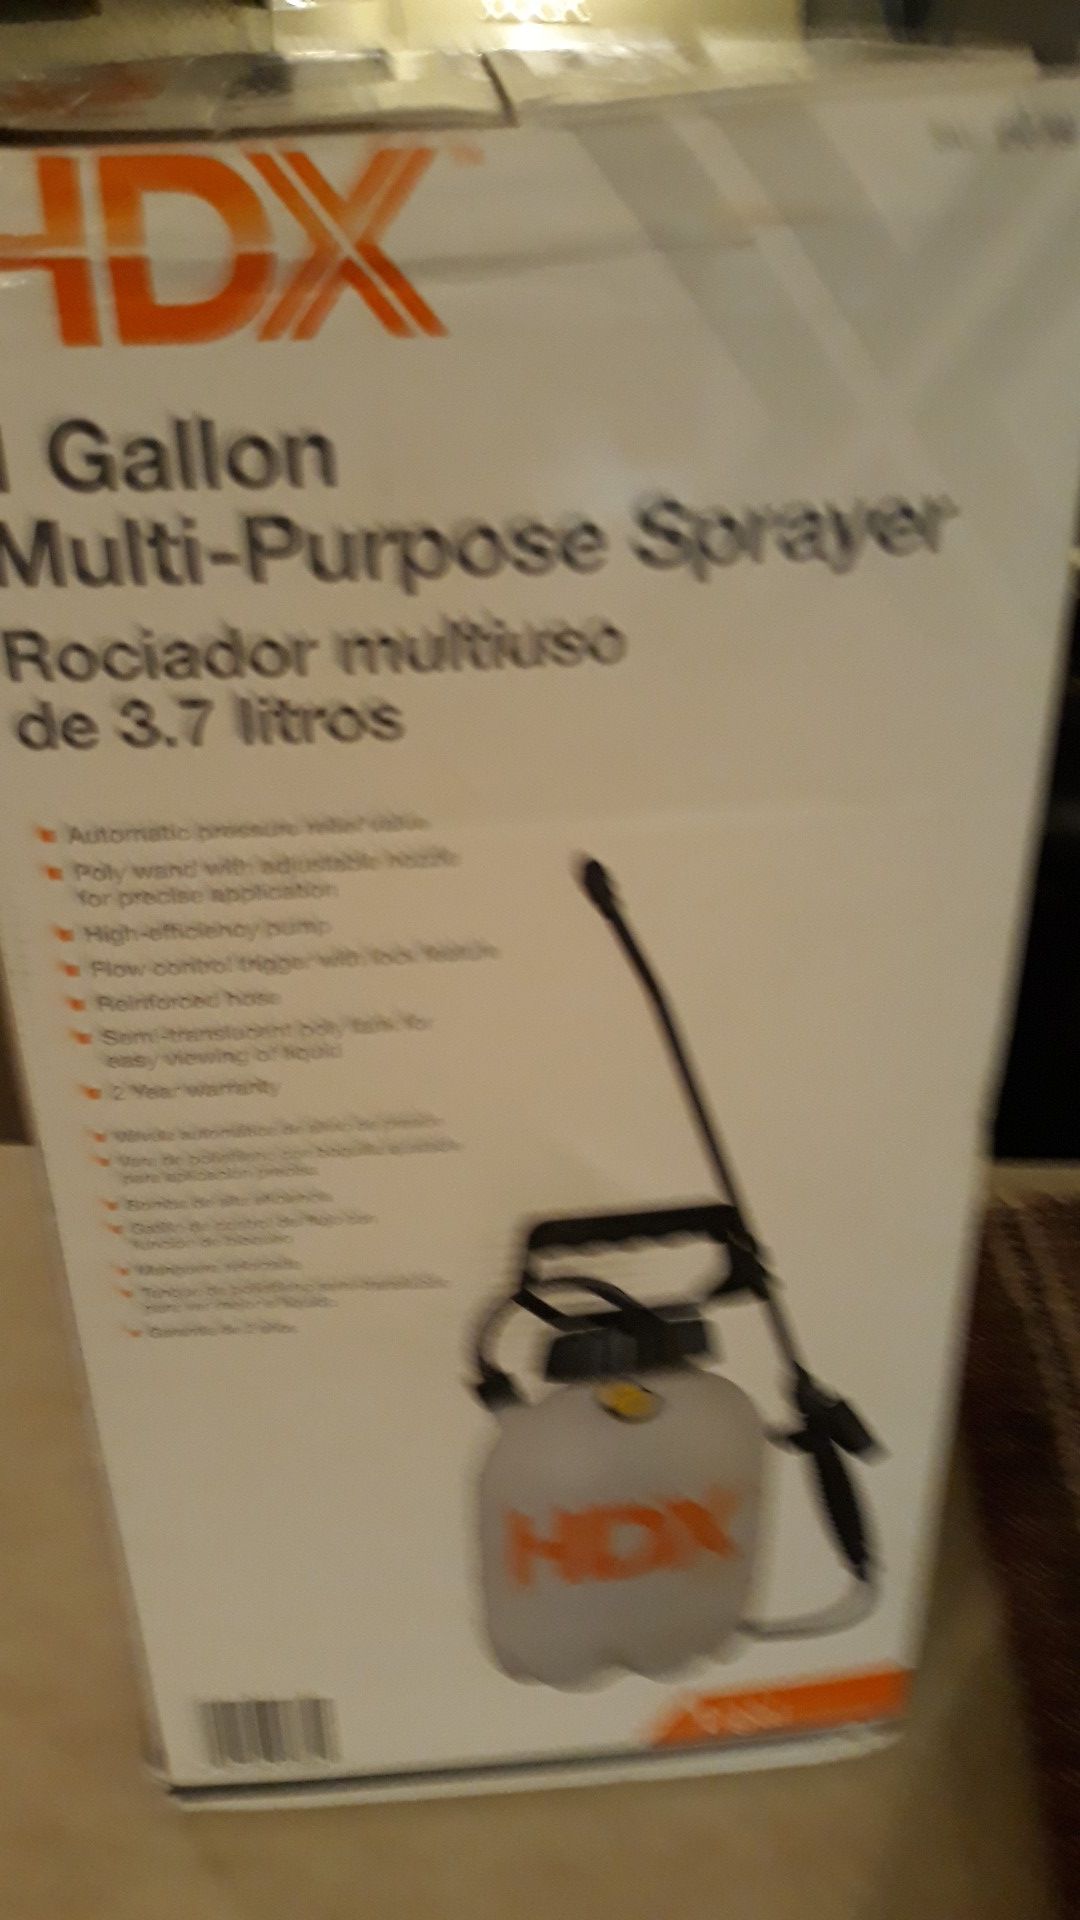 HDX 1 Gallon Multi Purpose Sprayer